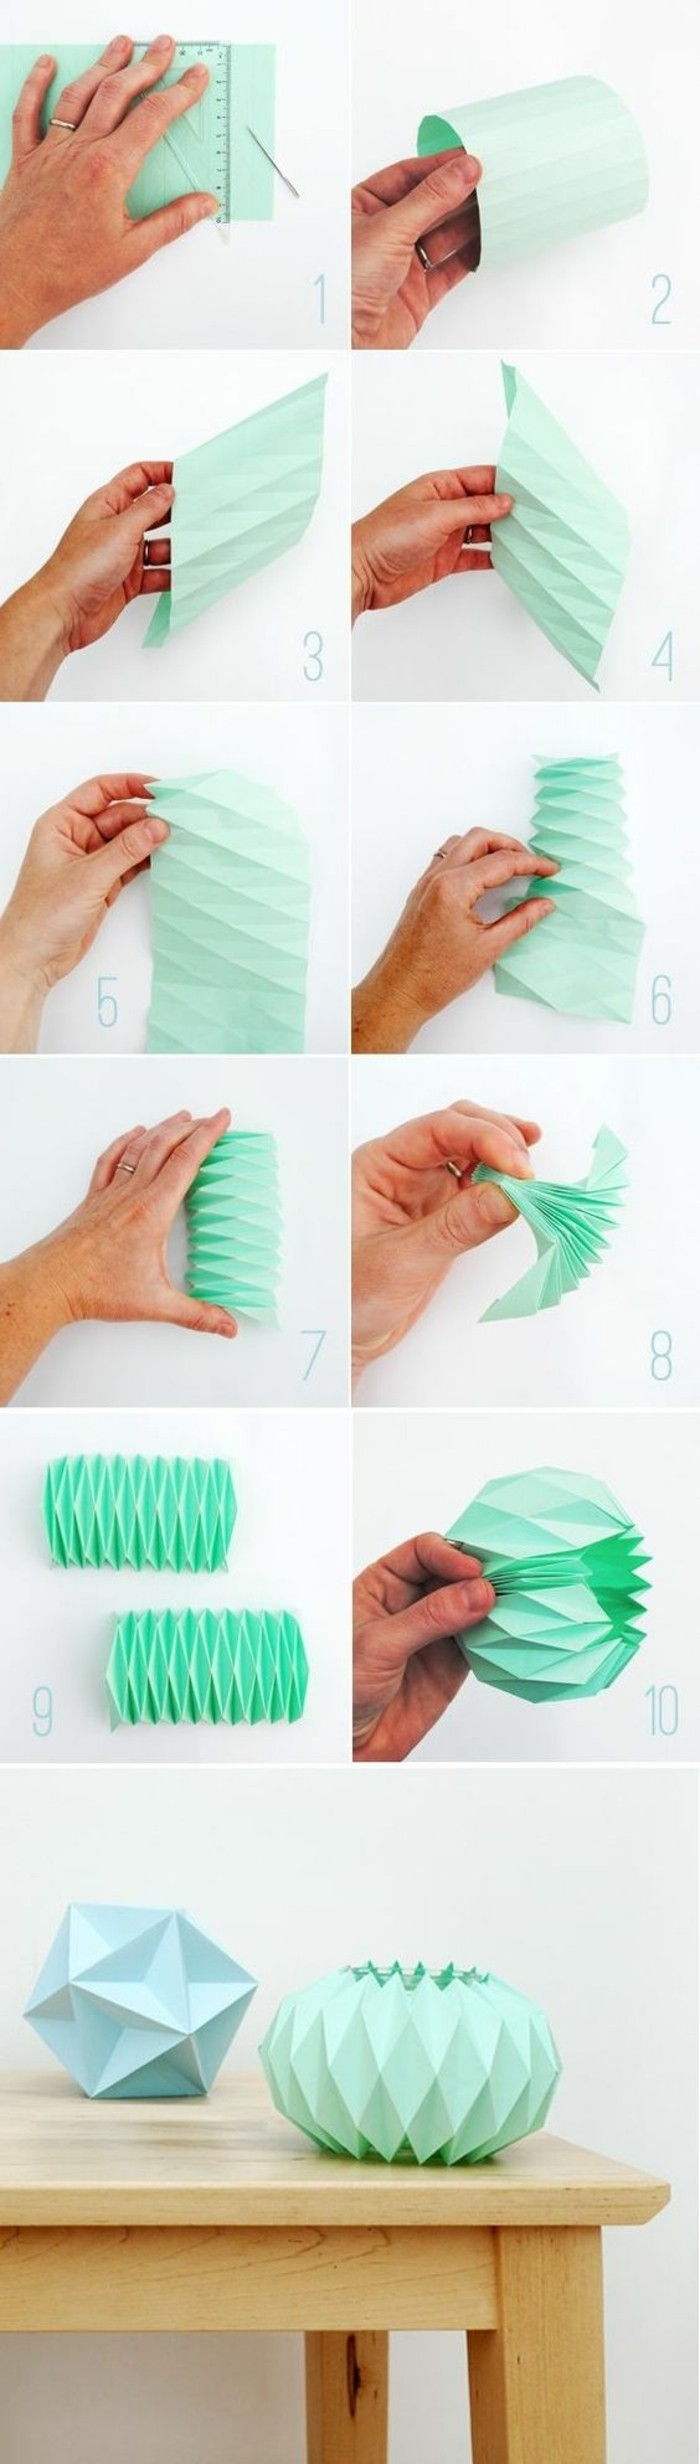 origamisiffror origami-faldig origami-craft origami origami